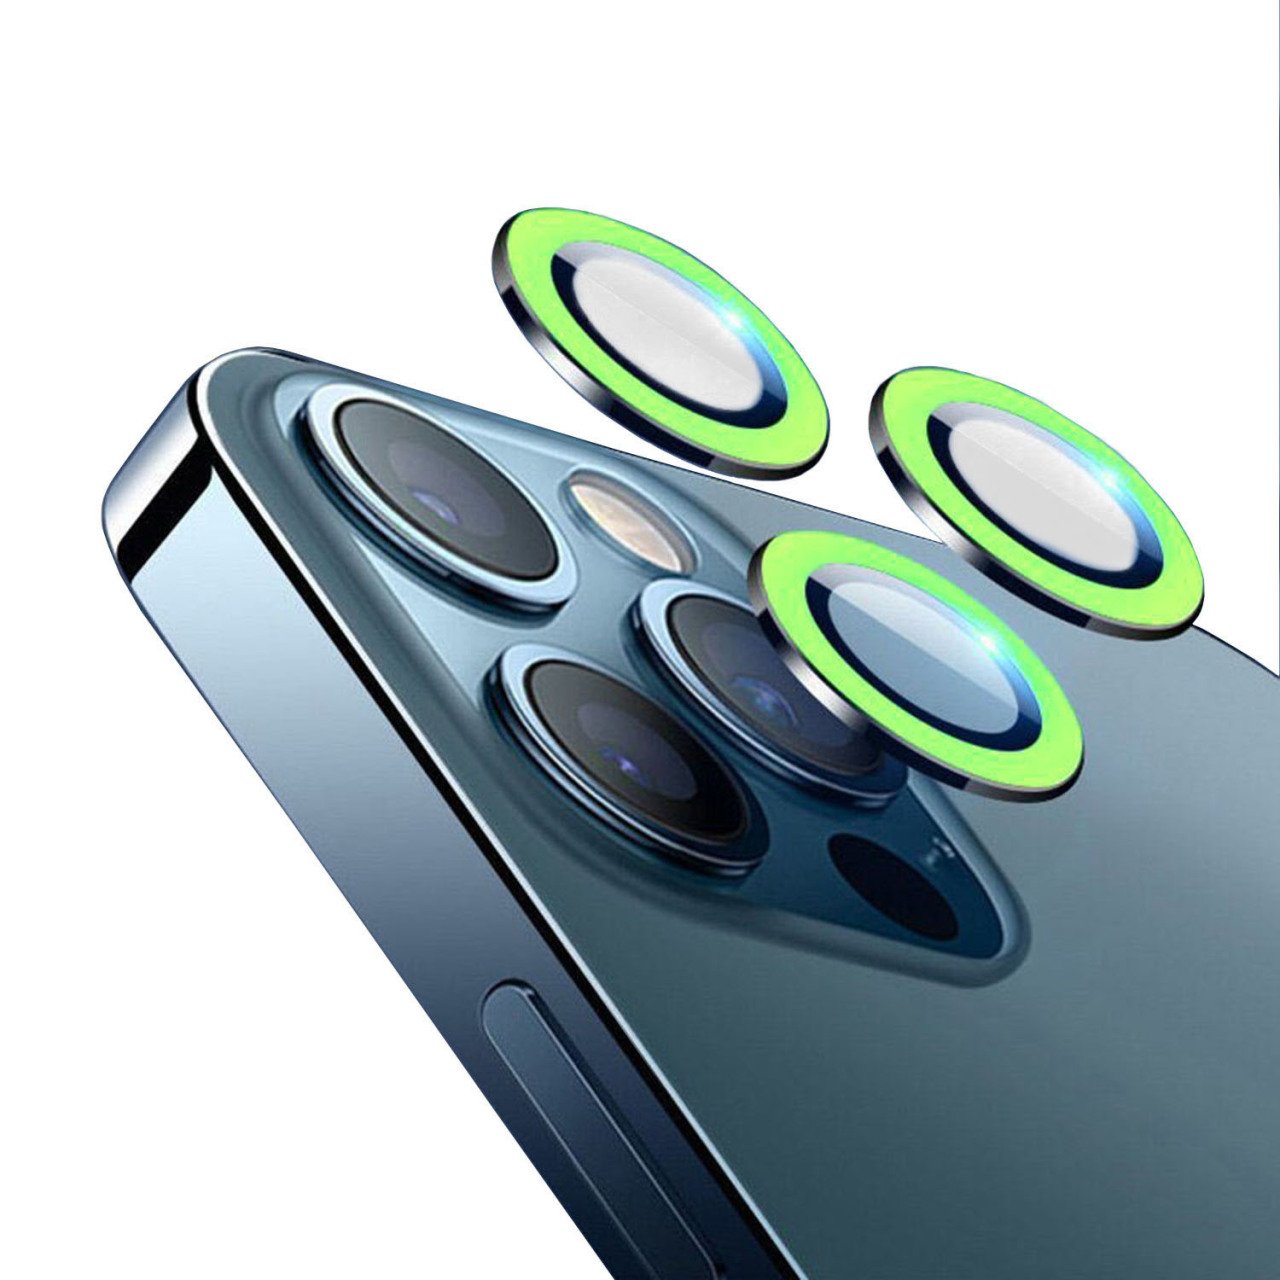 Microcase iPhone 12 Pro Max Fosfor Işıklı Kamera Camı Lens Koruyucu Halka Set - Fosfor Yeşil AL2883